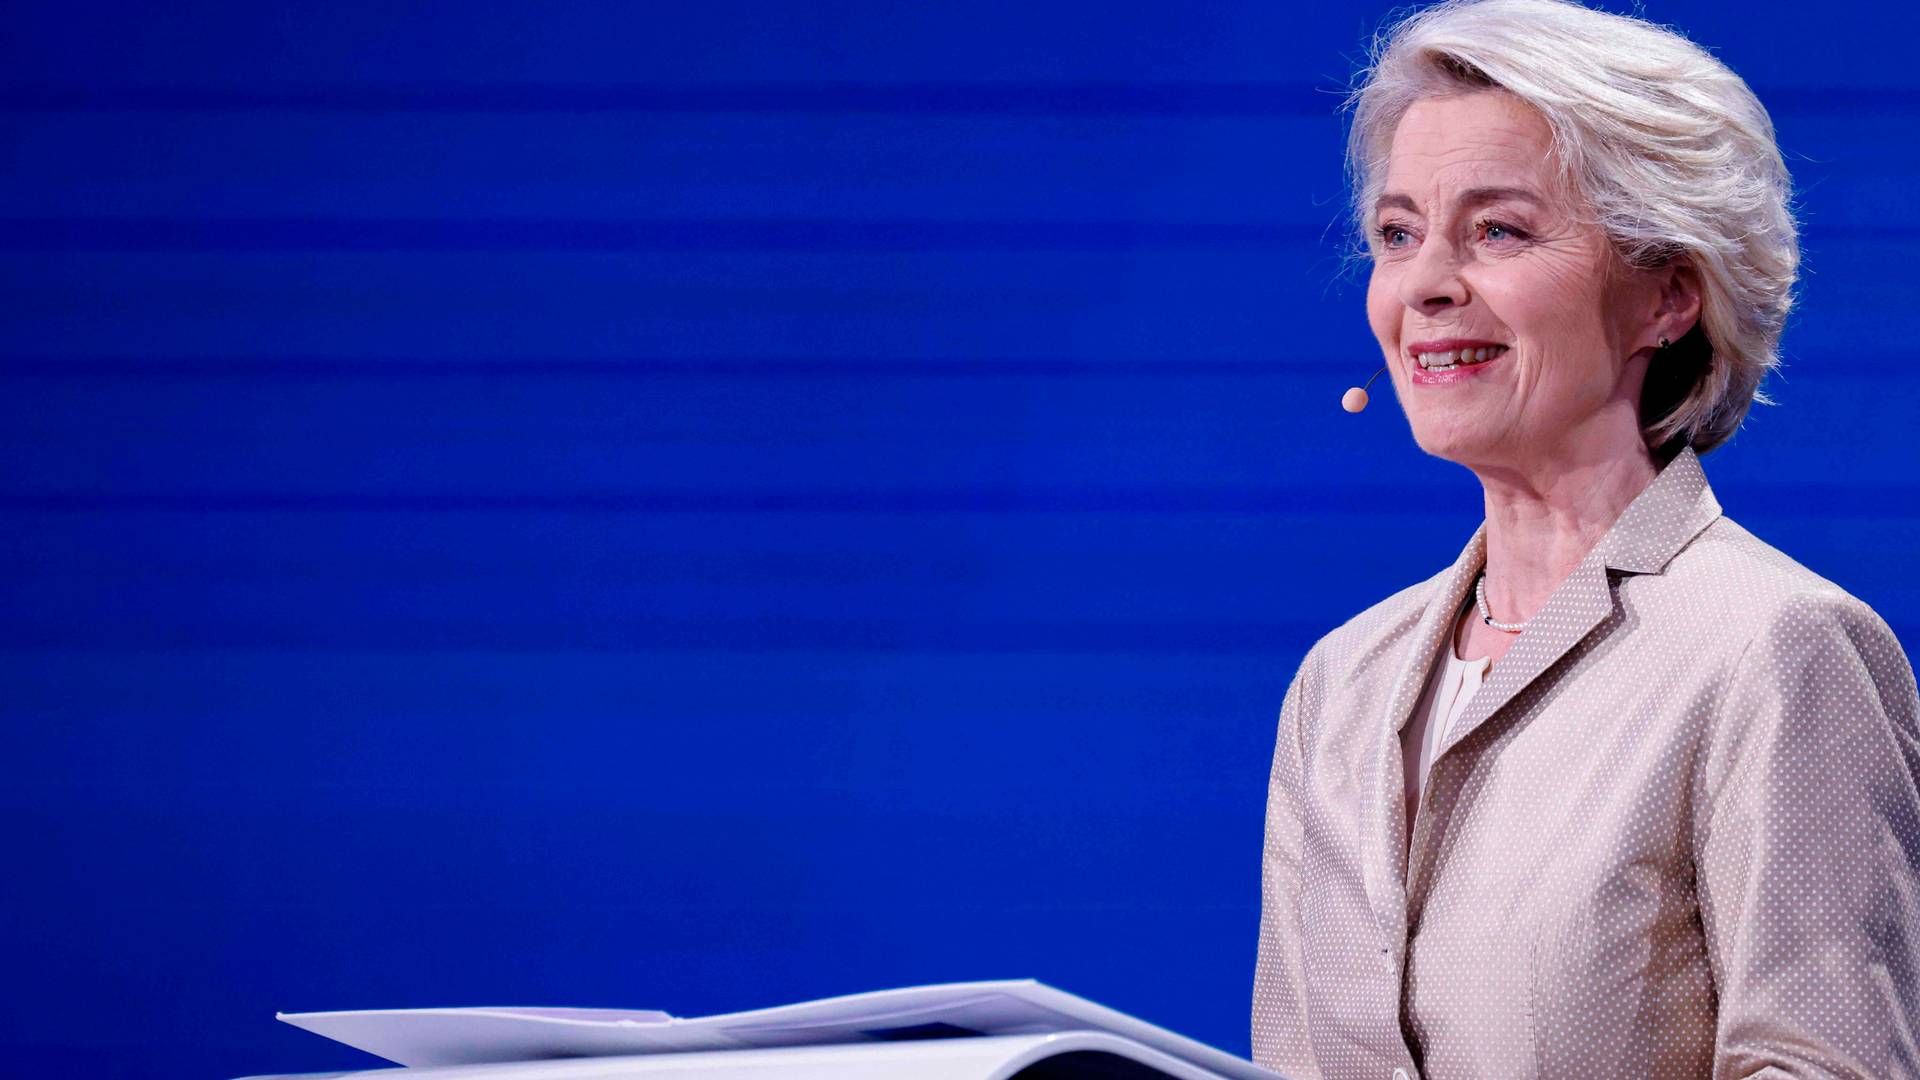 Kommisionsformand Ursula von der Leyen er en del af den konservative EPP-gruppe, som har haft et fornuftigt valg på europæisk plan. | Foto: Kenzo Tribouillard